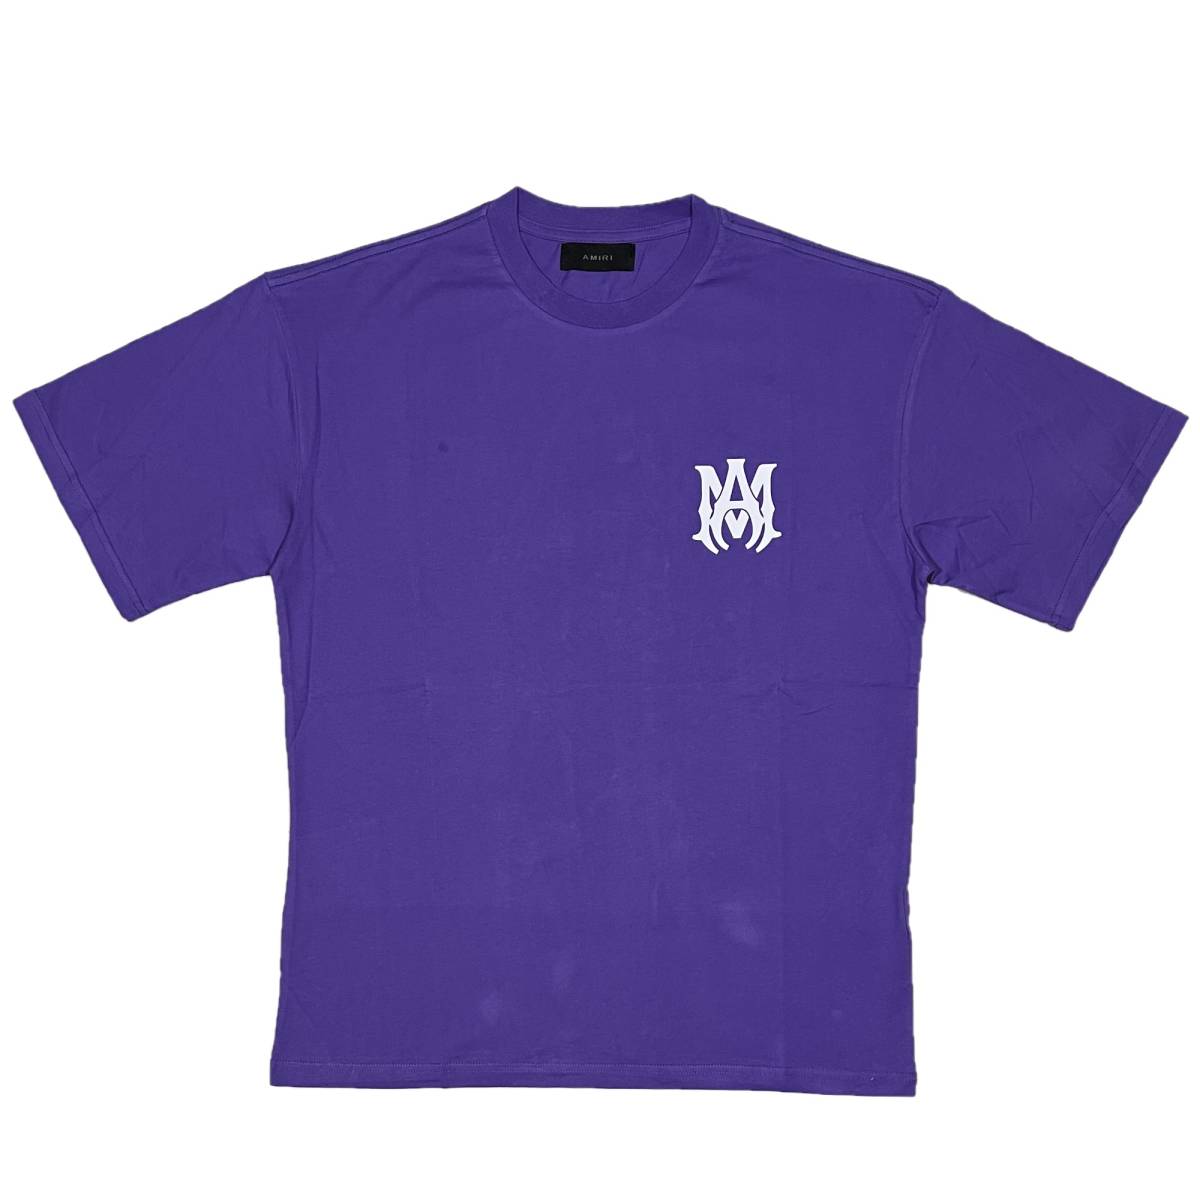 [並行輸入品] AMIRI アミリ MA CORE ロゴ 半袖 Tシャツ (パープル) (M)